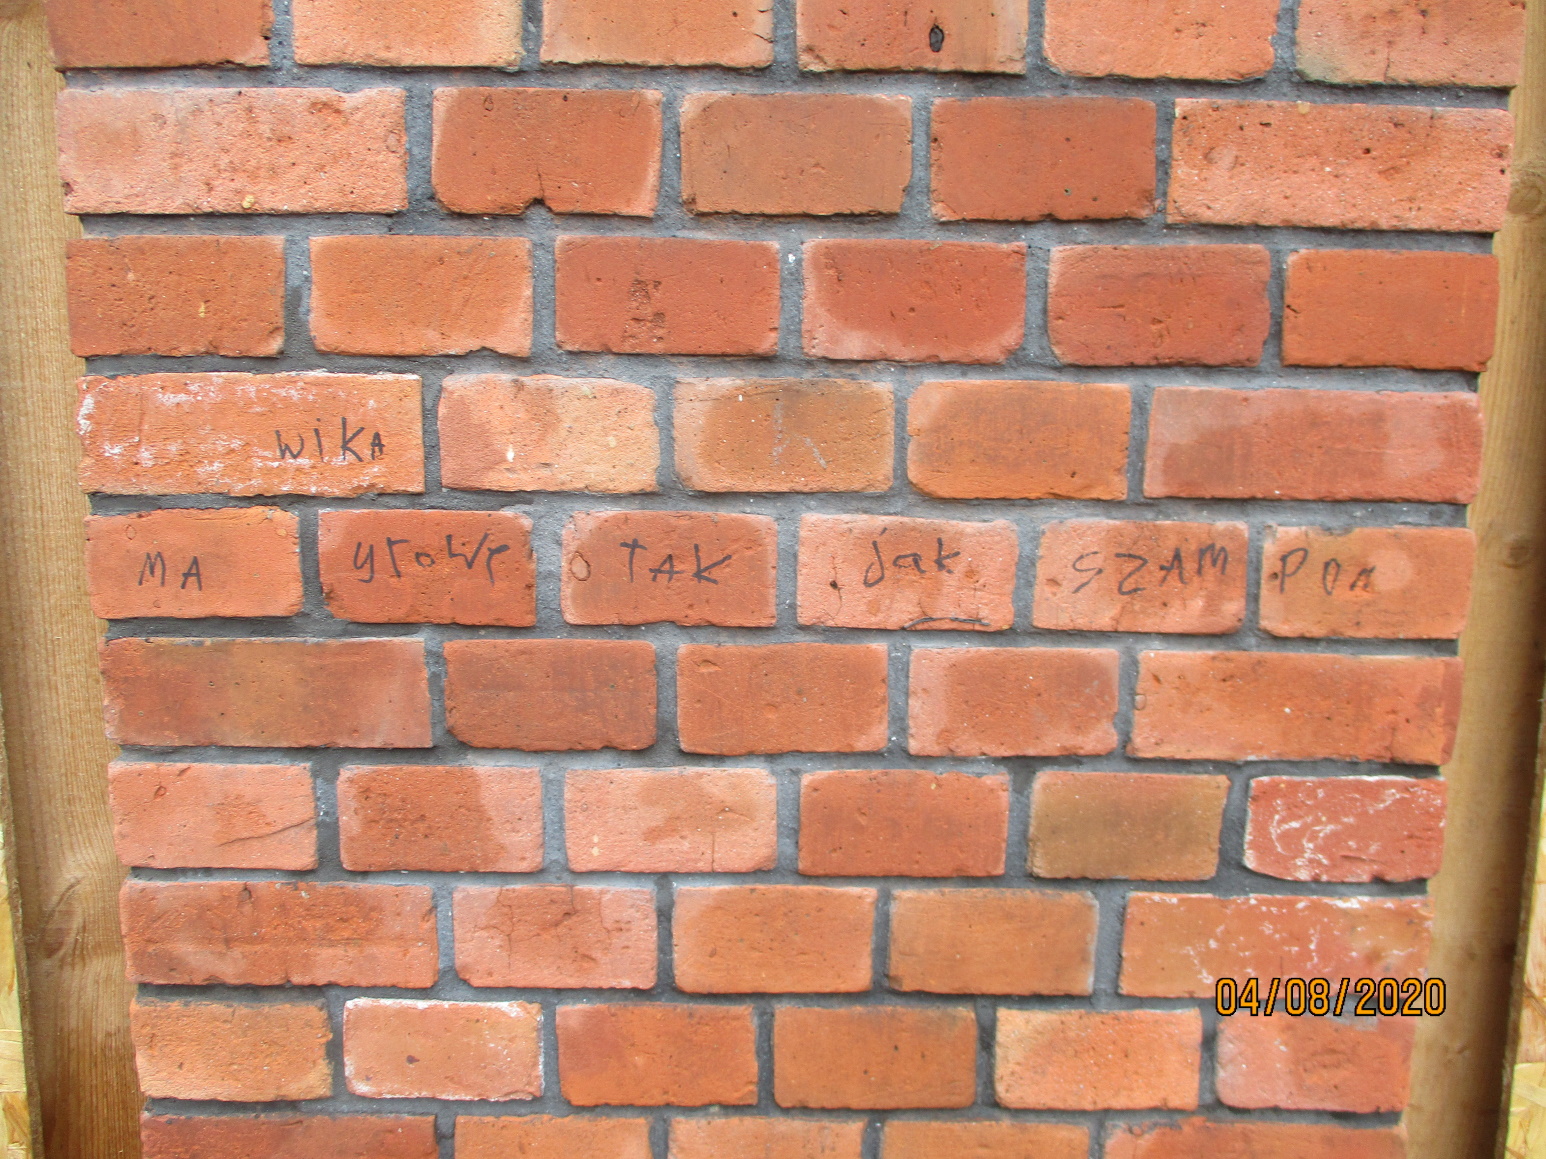 graffiti na murze zabytkowego budynku przez osobę nieletnią- interwencja SM